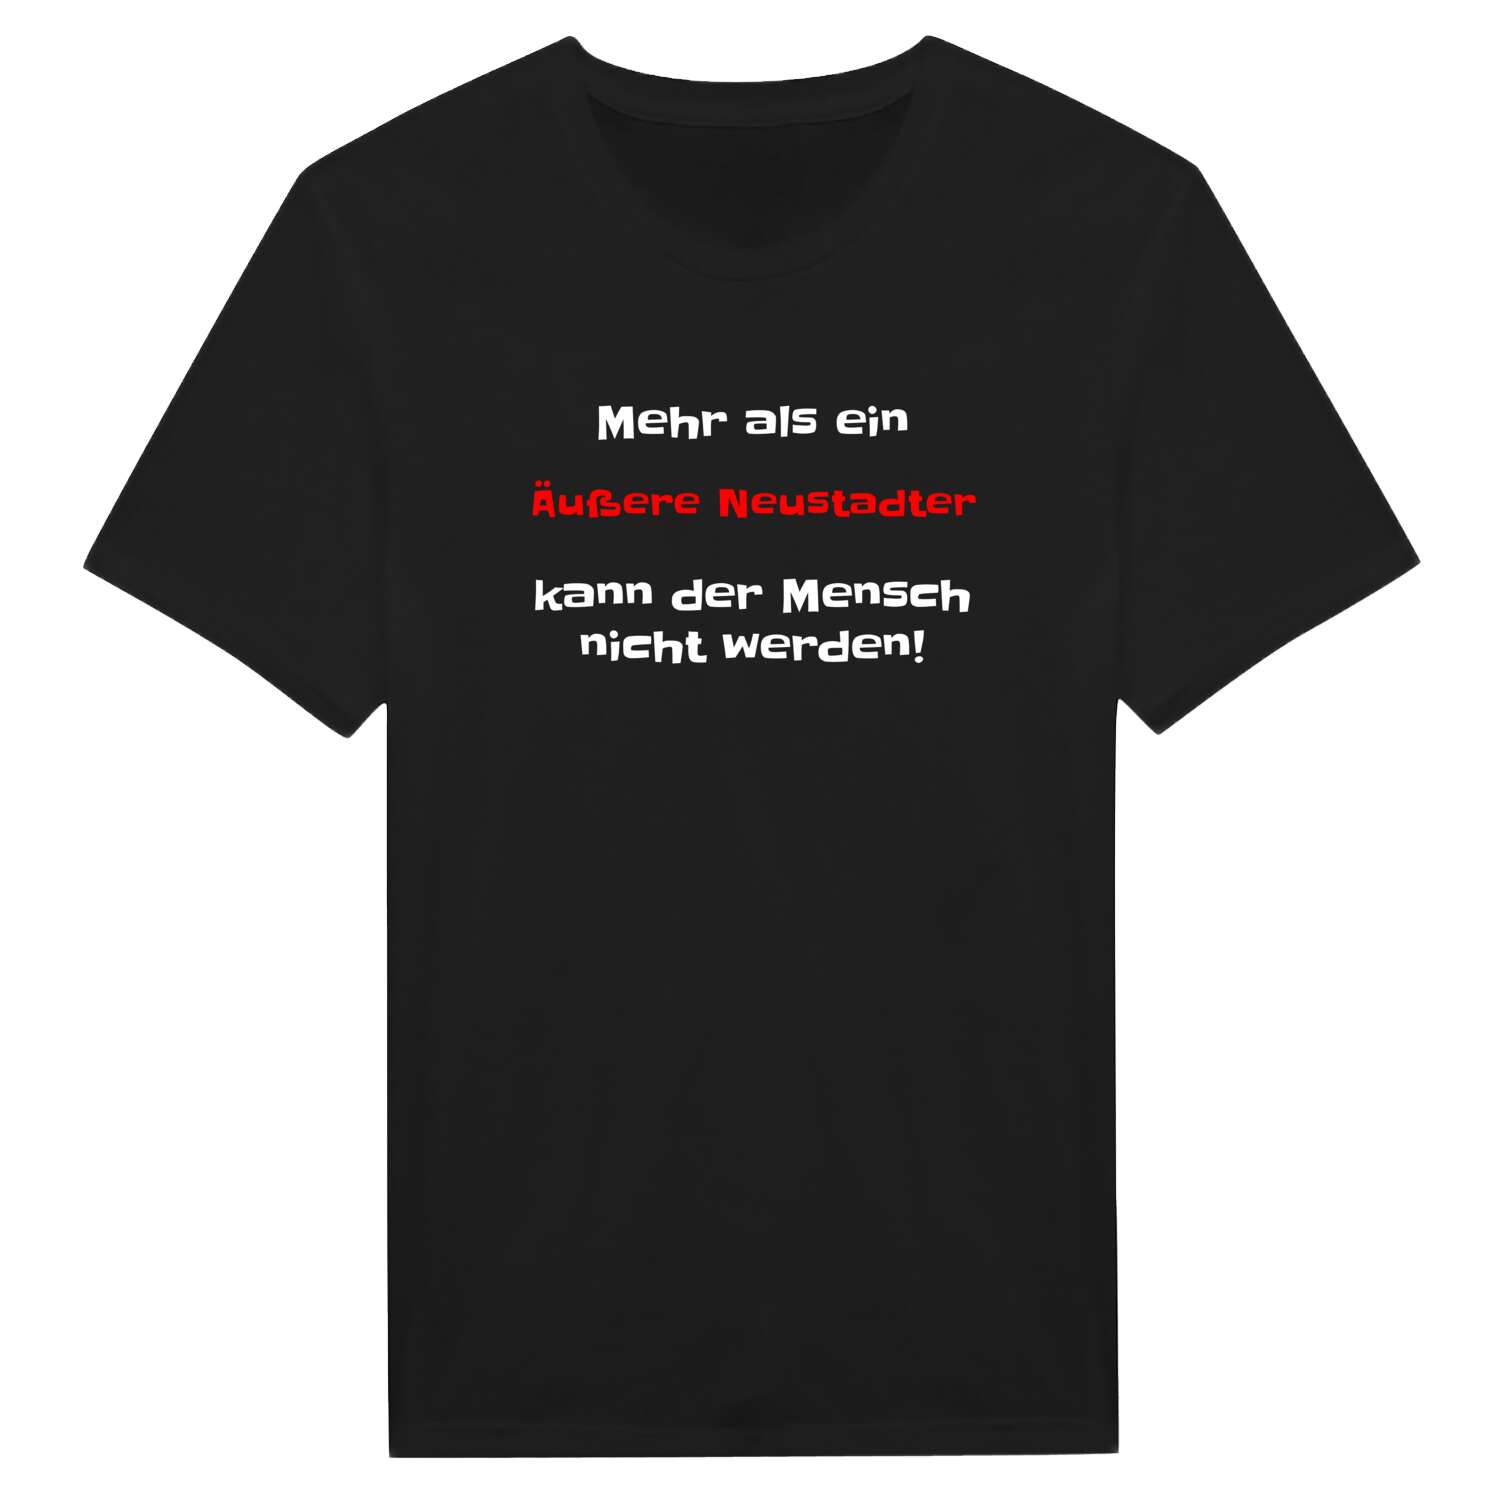 Äußere Neustadt T-Shirt »Mehr als ein«